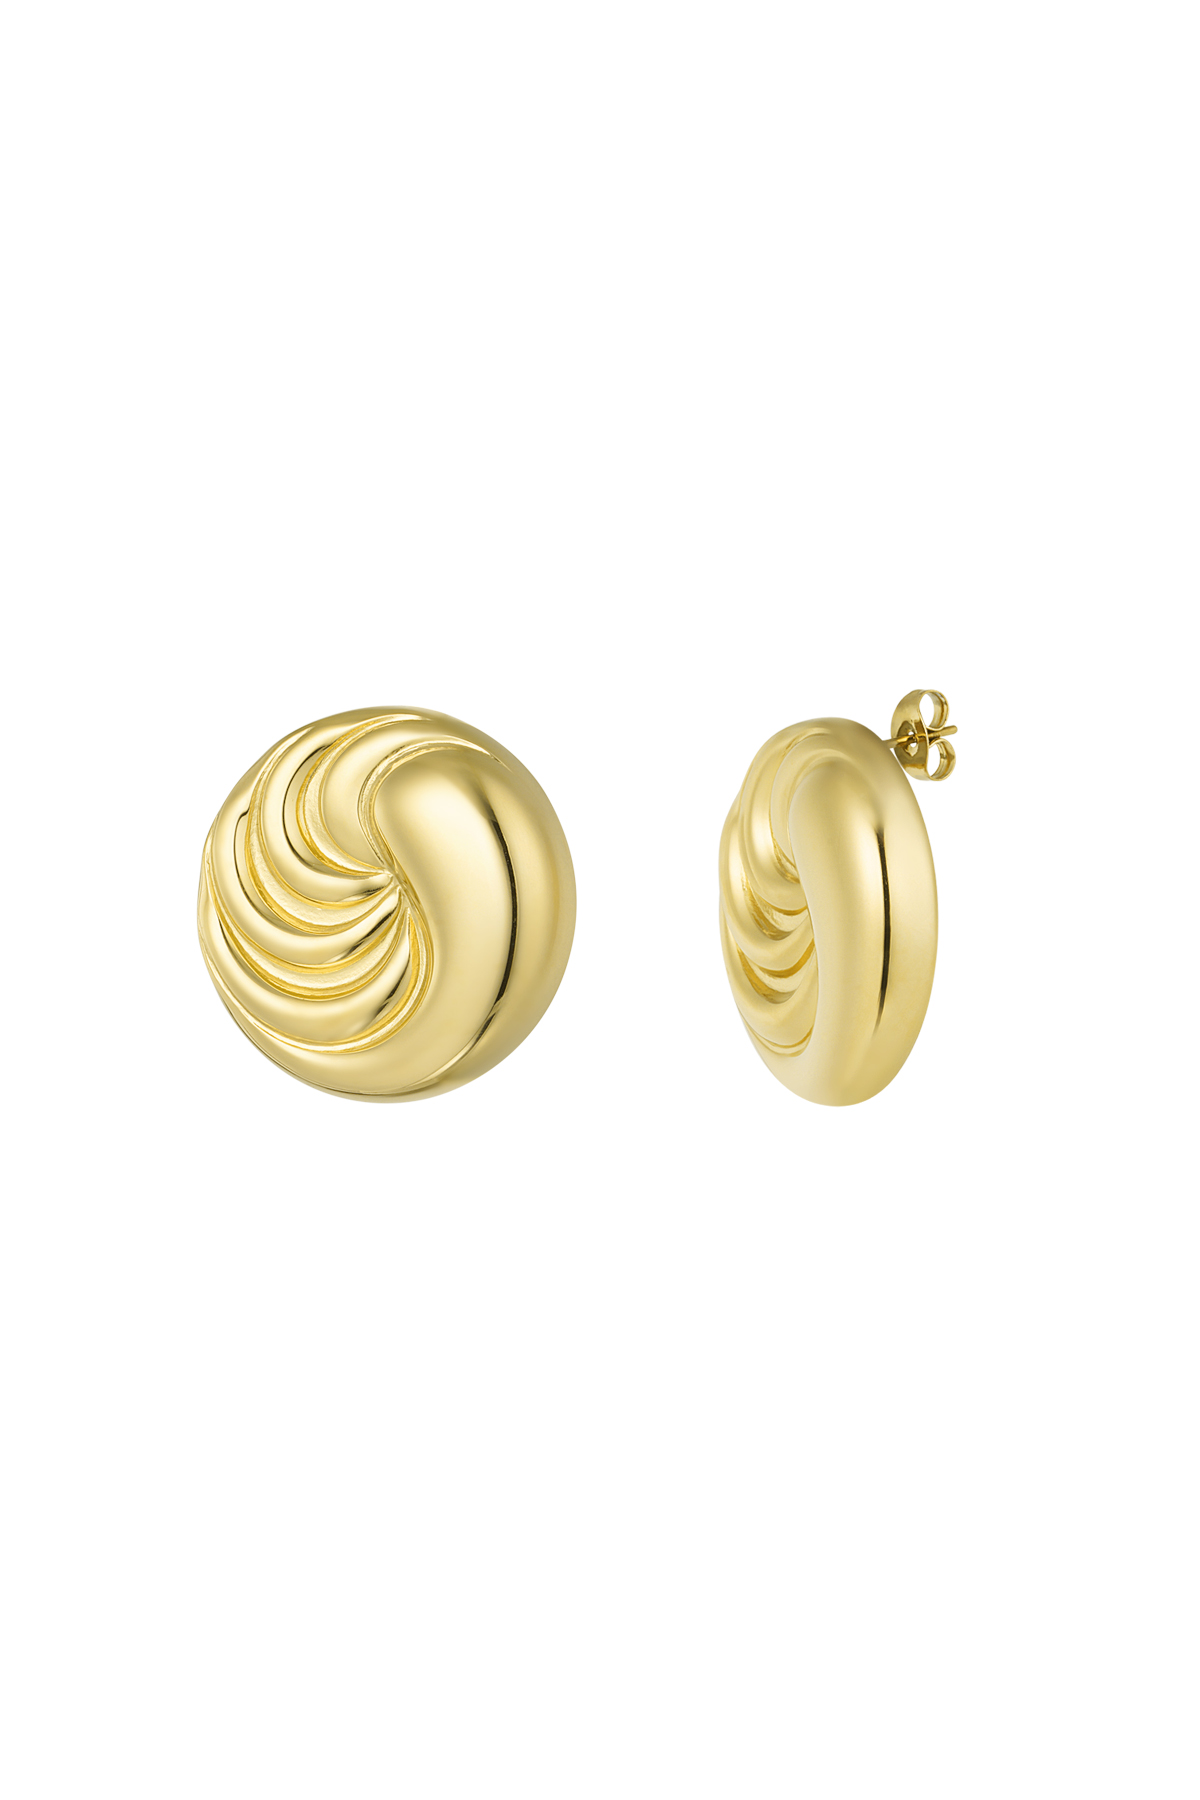 Earrings twizzle wave - gold 